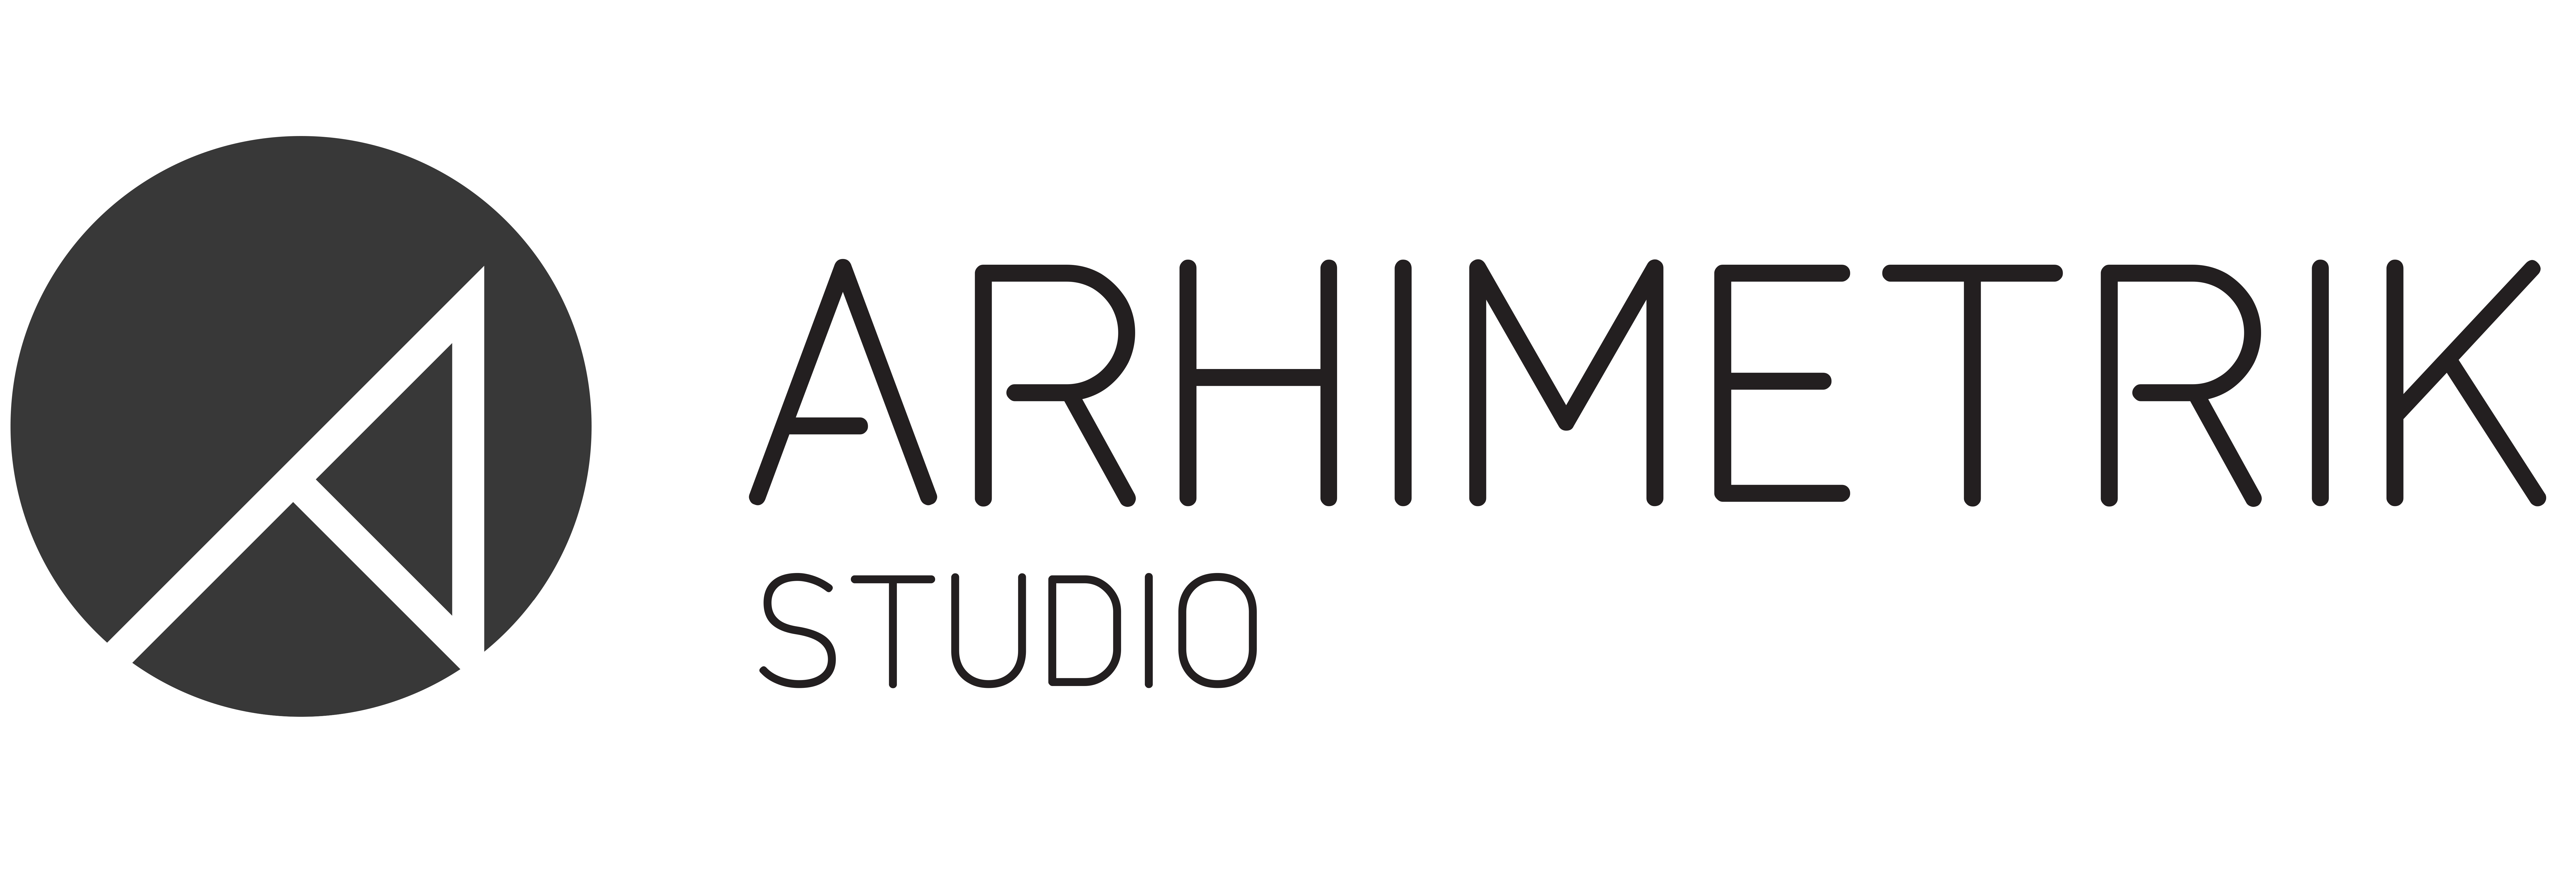 Arhimetrik Studio